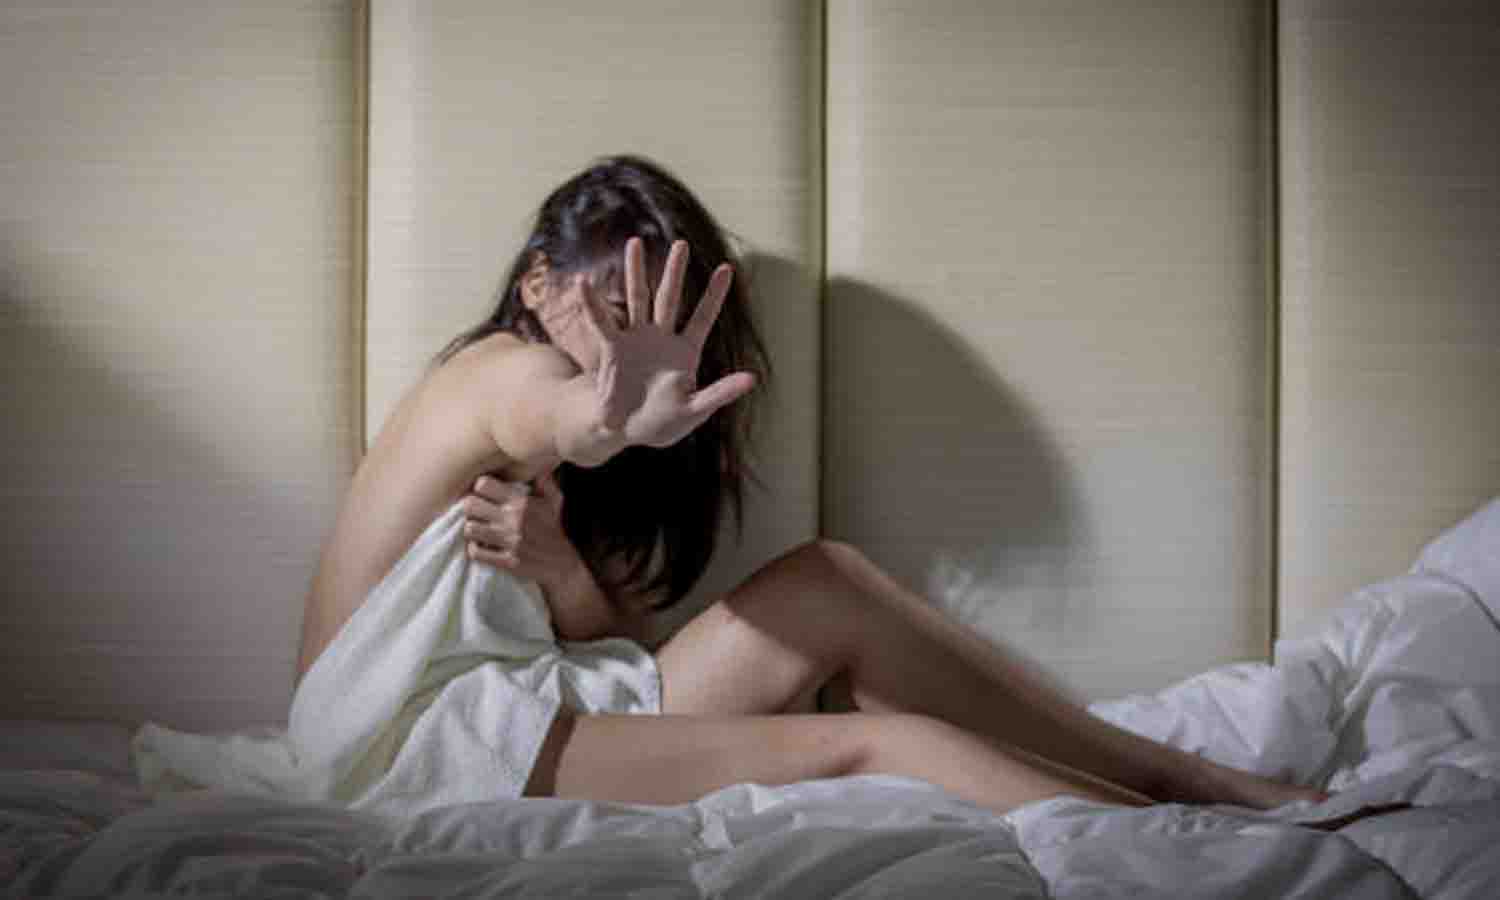 Por qué me molesta estar desnuda con mi pareja? La gimnifobia puede afectar tu vida sexual Salud La Revista El Universo